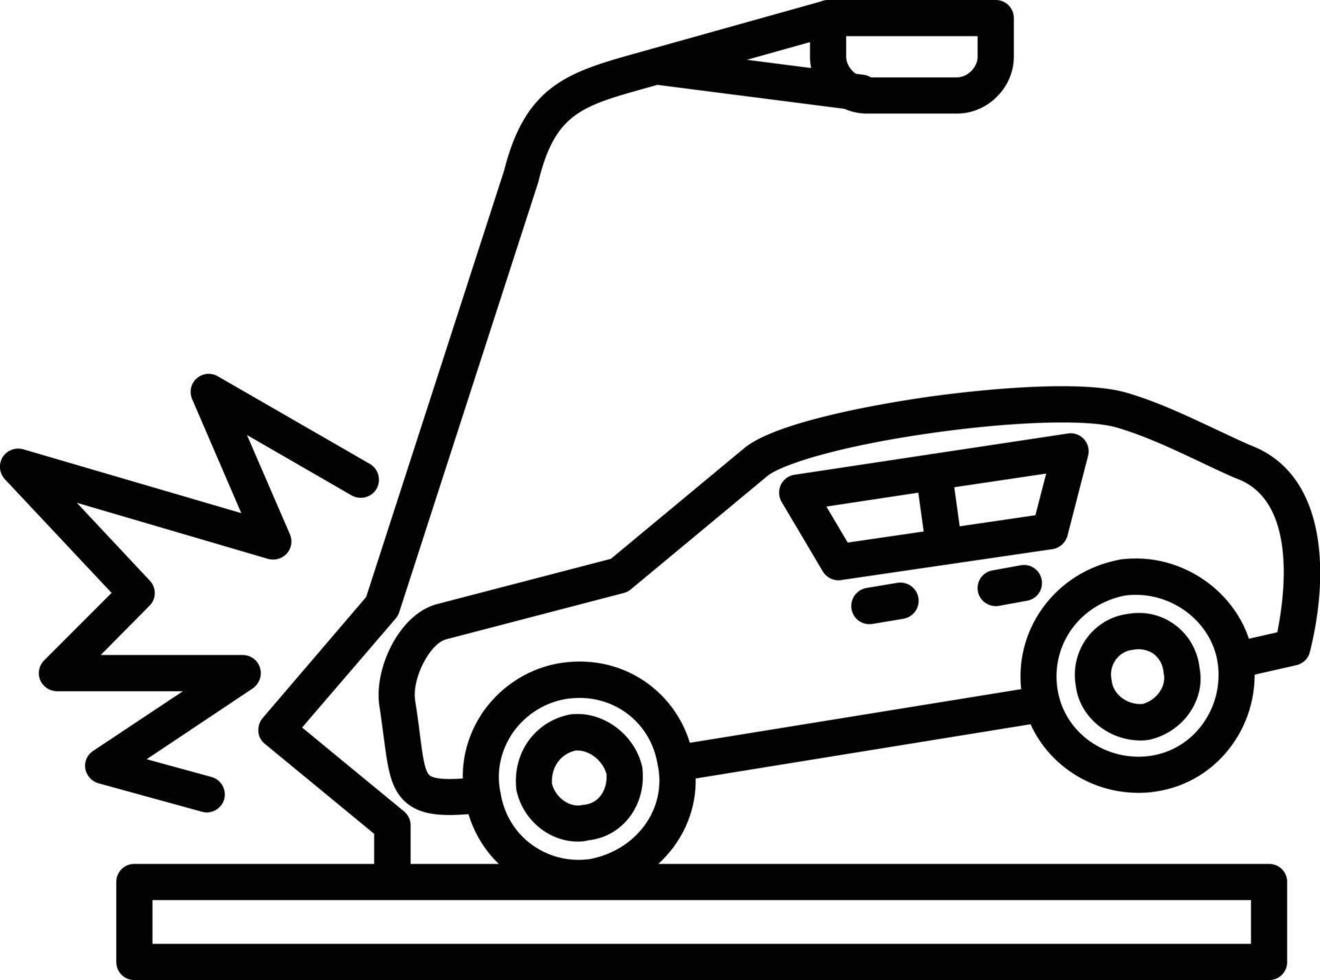 icône de ligne de voiture accidentée vecteur